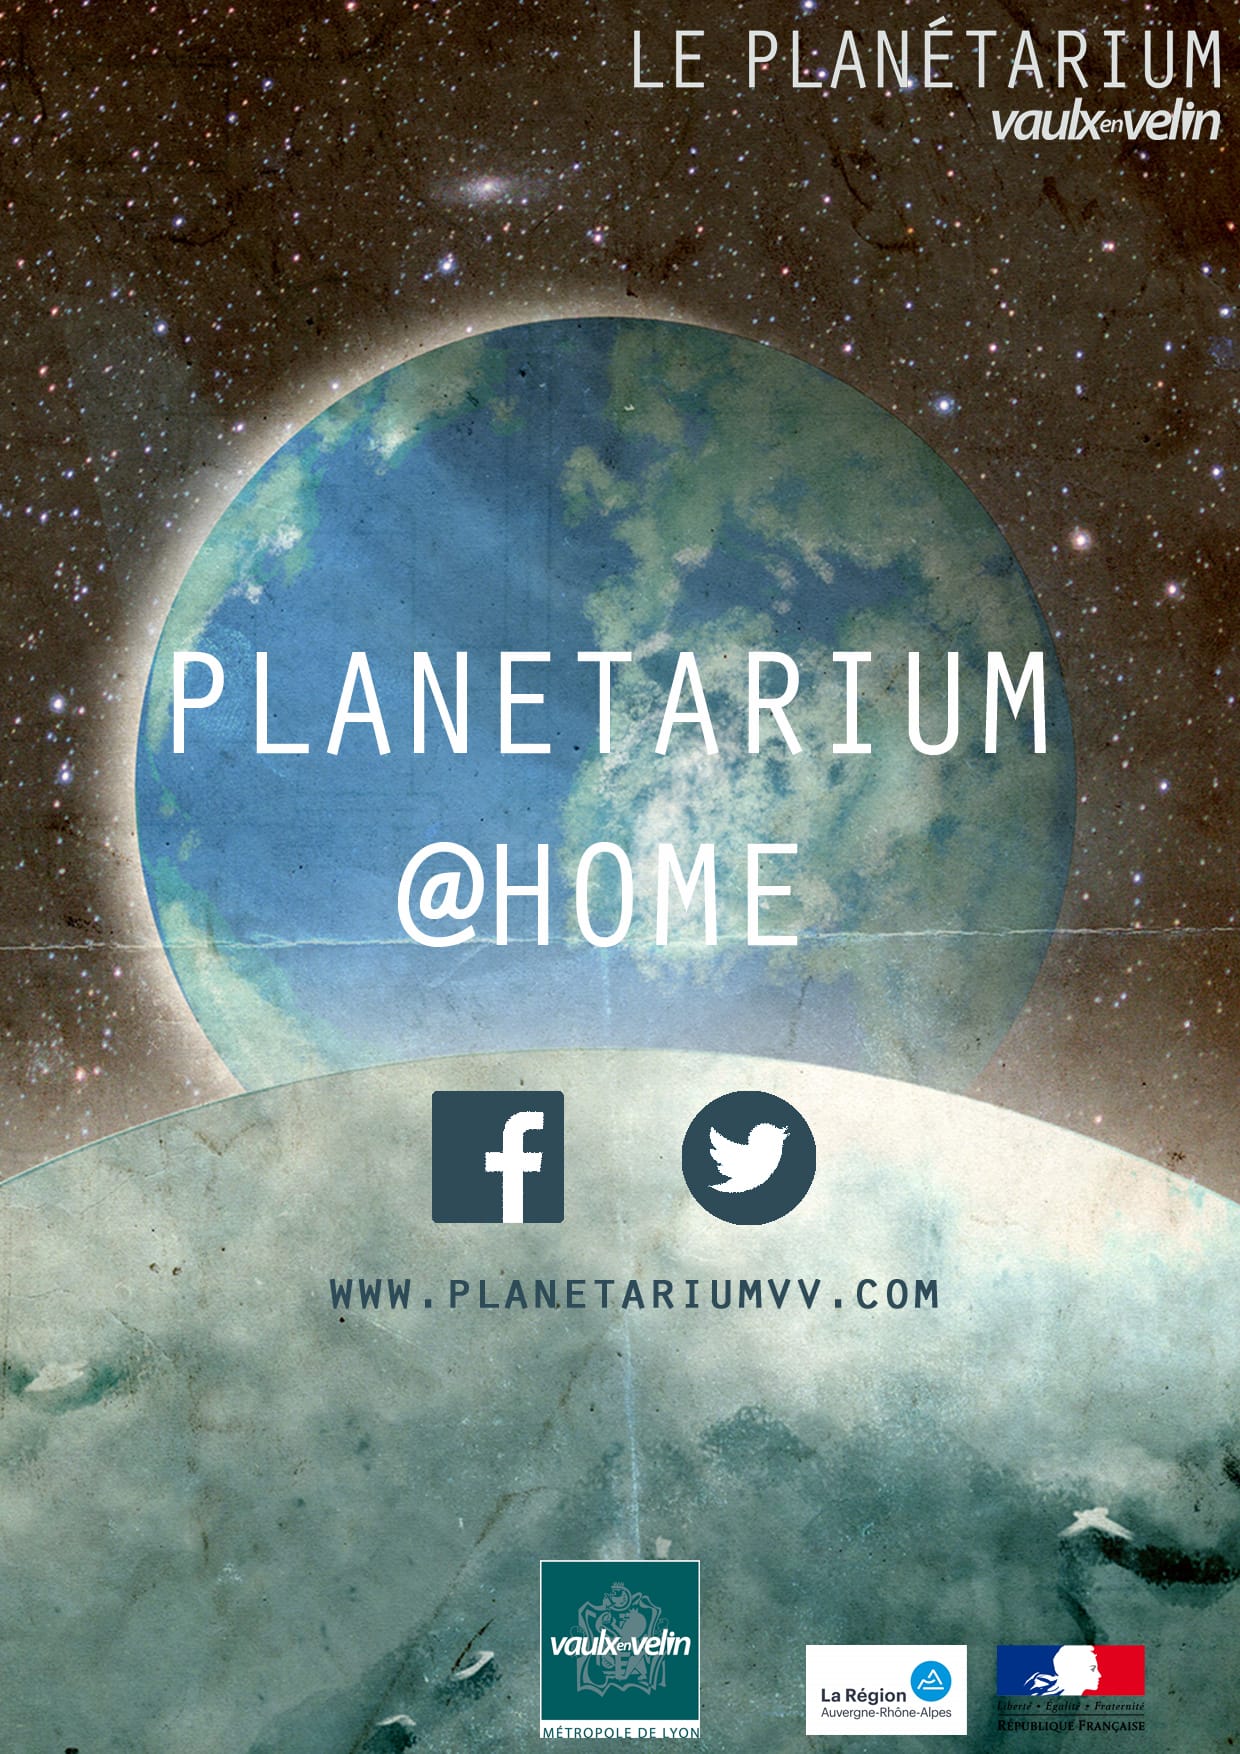 Planetarium@home